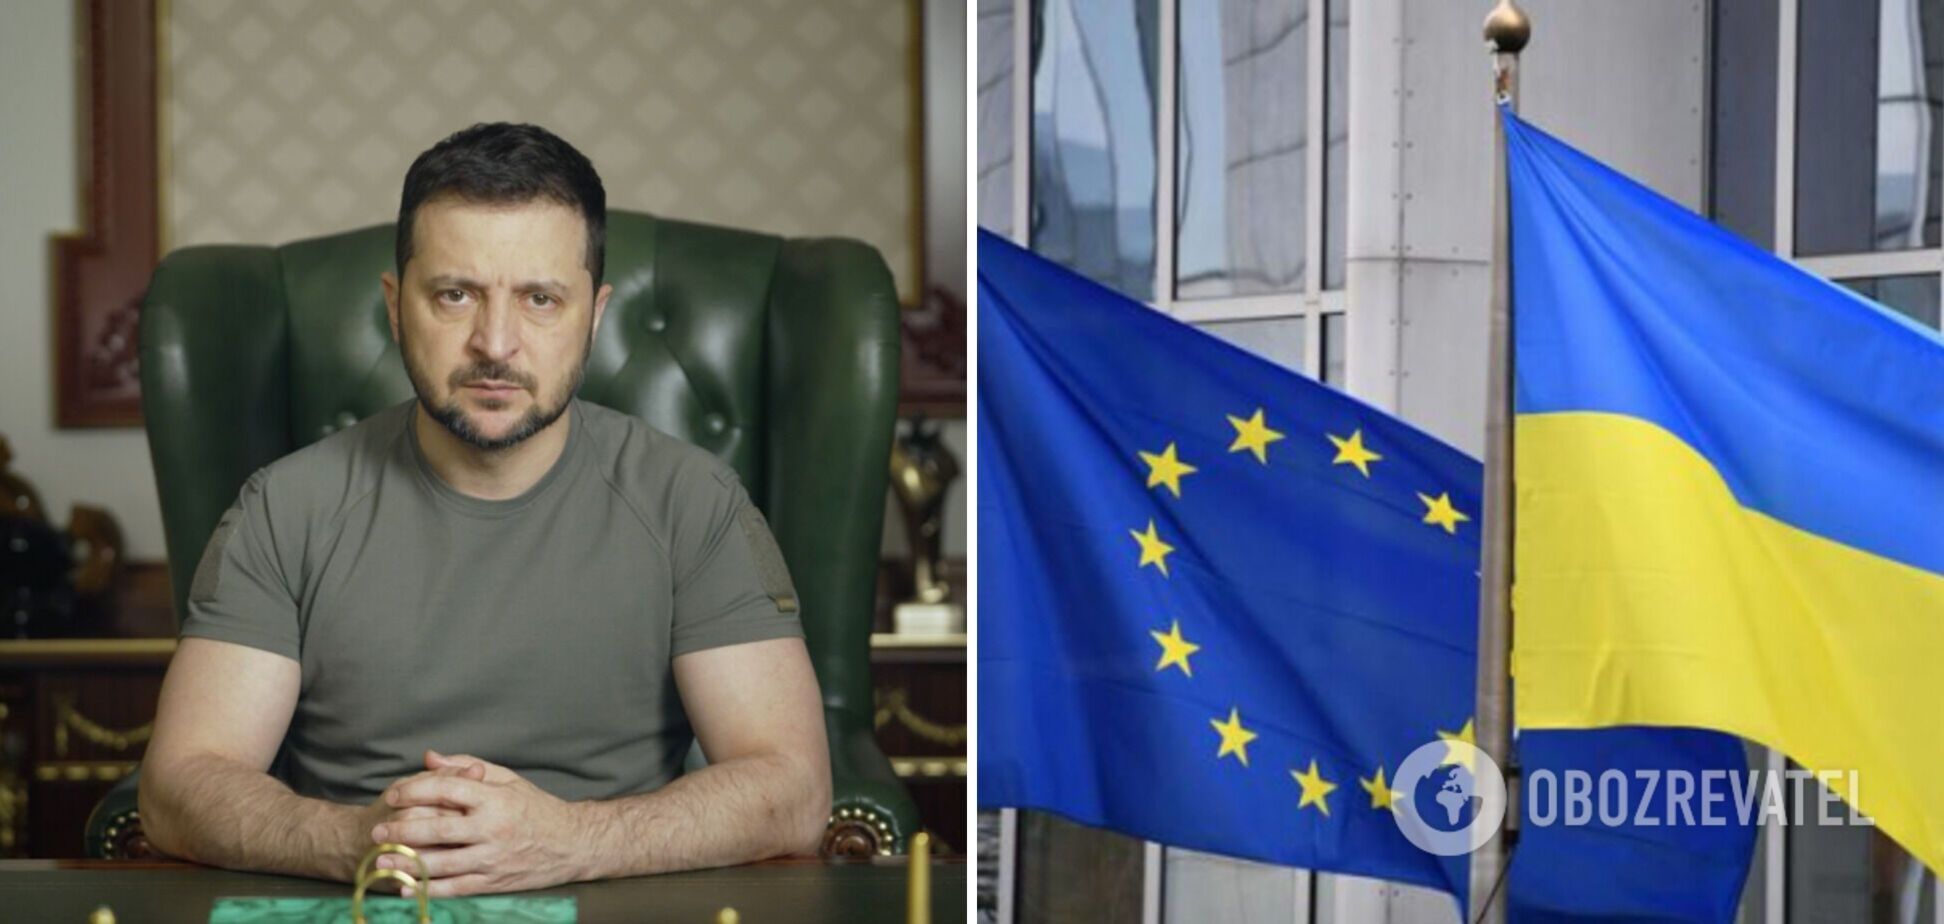 ЕС официально начал процесс скрининга украинского законодательства, – Зеленский